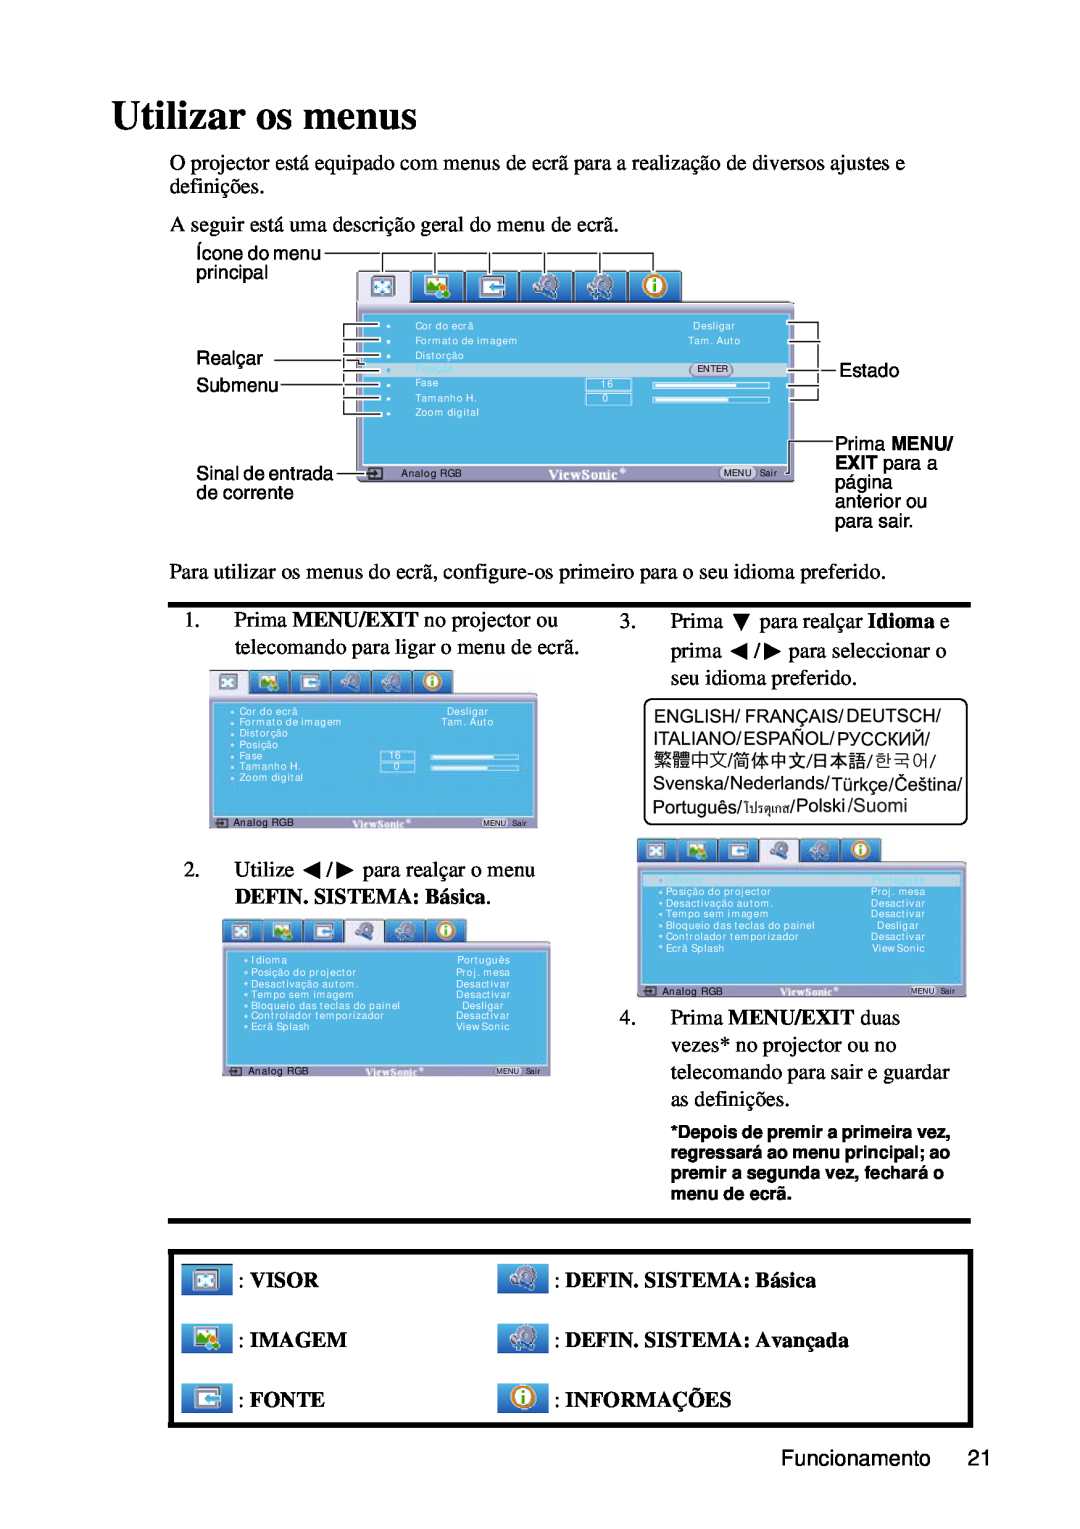 ViewSonic VS12440 Utilizar os menus, Visor, DEFIN. SISTEMA Básica, Imagem, DEFIN. SISTEMA Avançada, Fonte Informações 